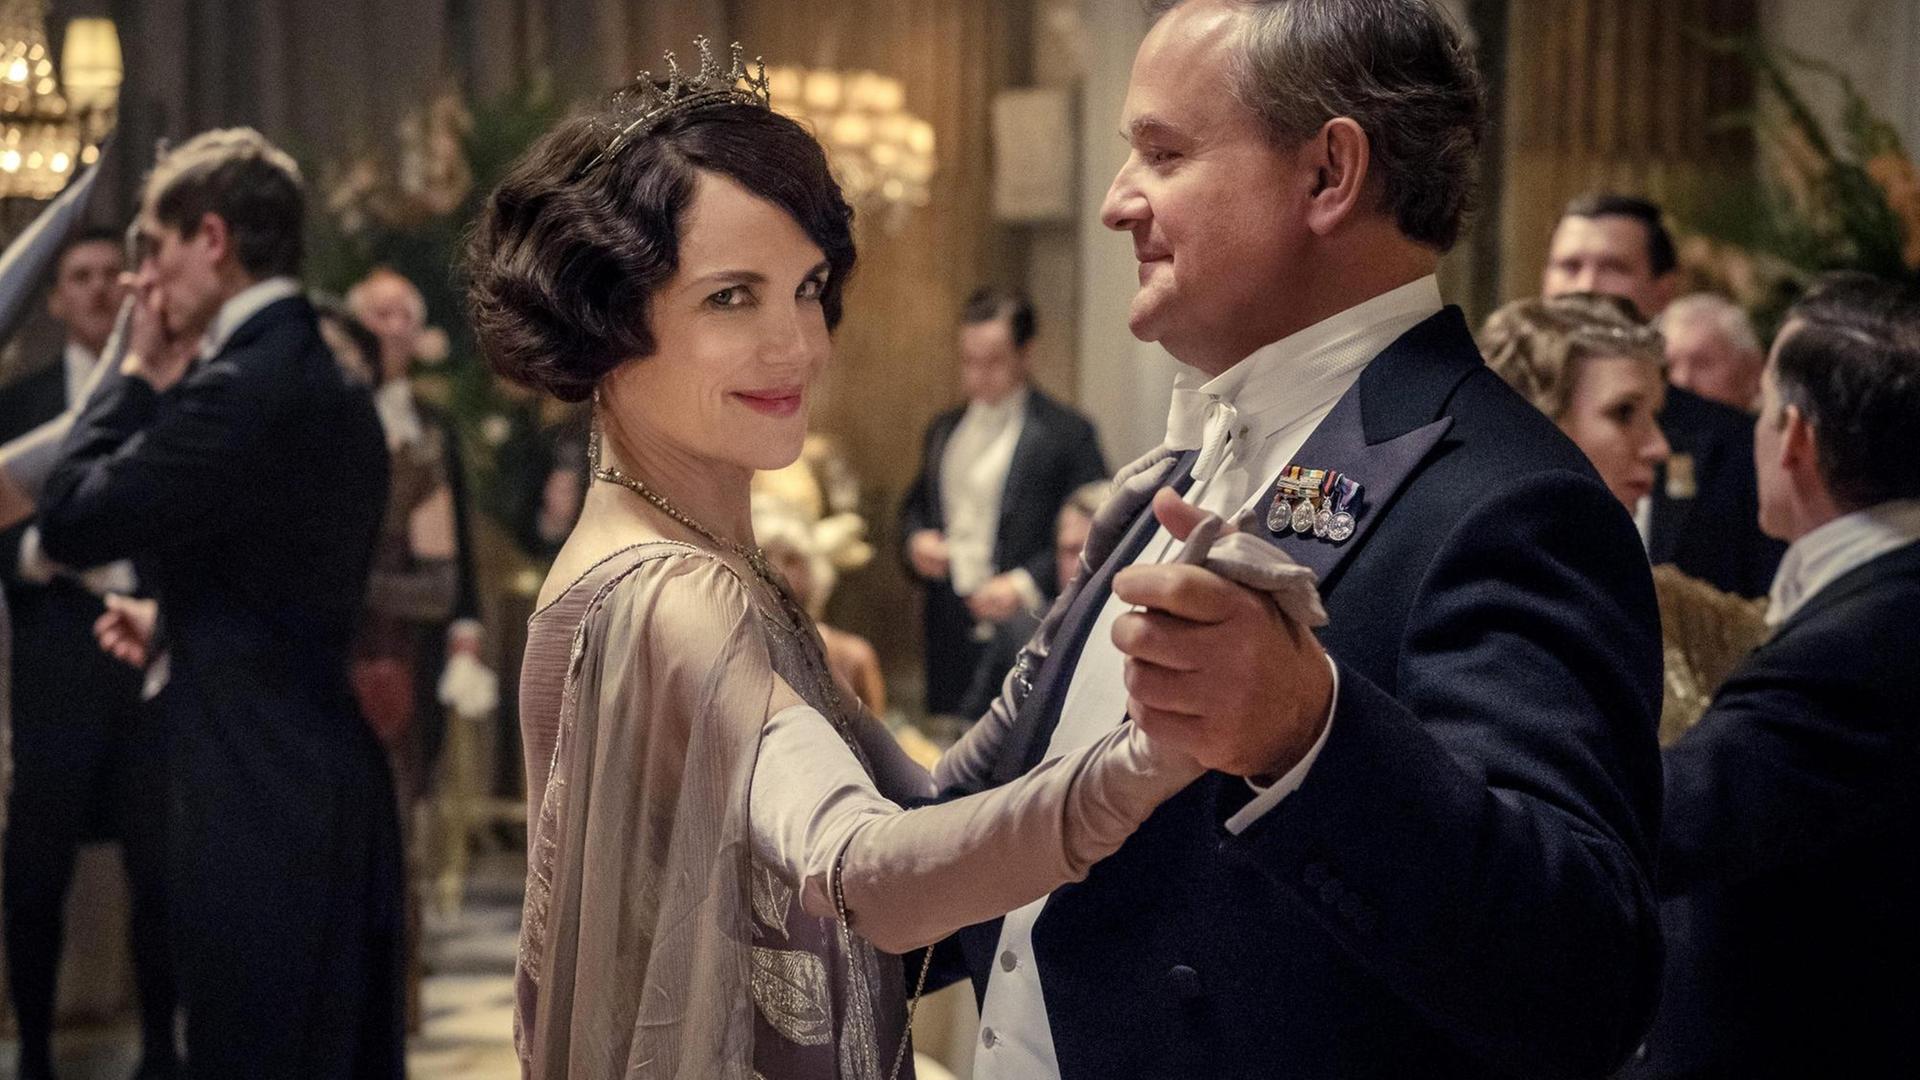 Szenenausschnitt aus dem Film "Downton Abbey" nach der gleichnamigen Fernsehserie, in dem Lord und Lady Grantham, dargestellt durch Hugh Bonneville und Elizabeth McGovern, elegant gekleidet beim Tanzen zu sehen sind.